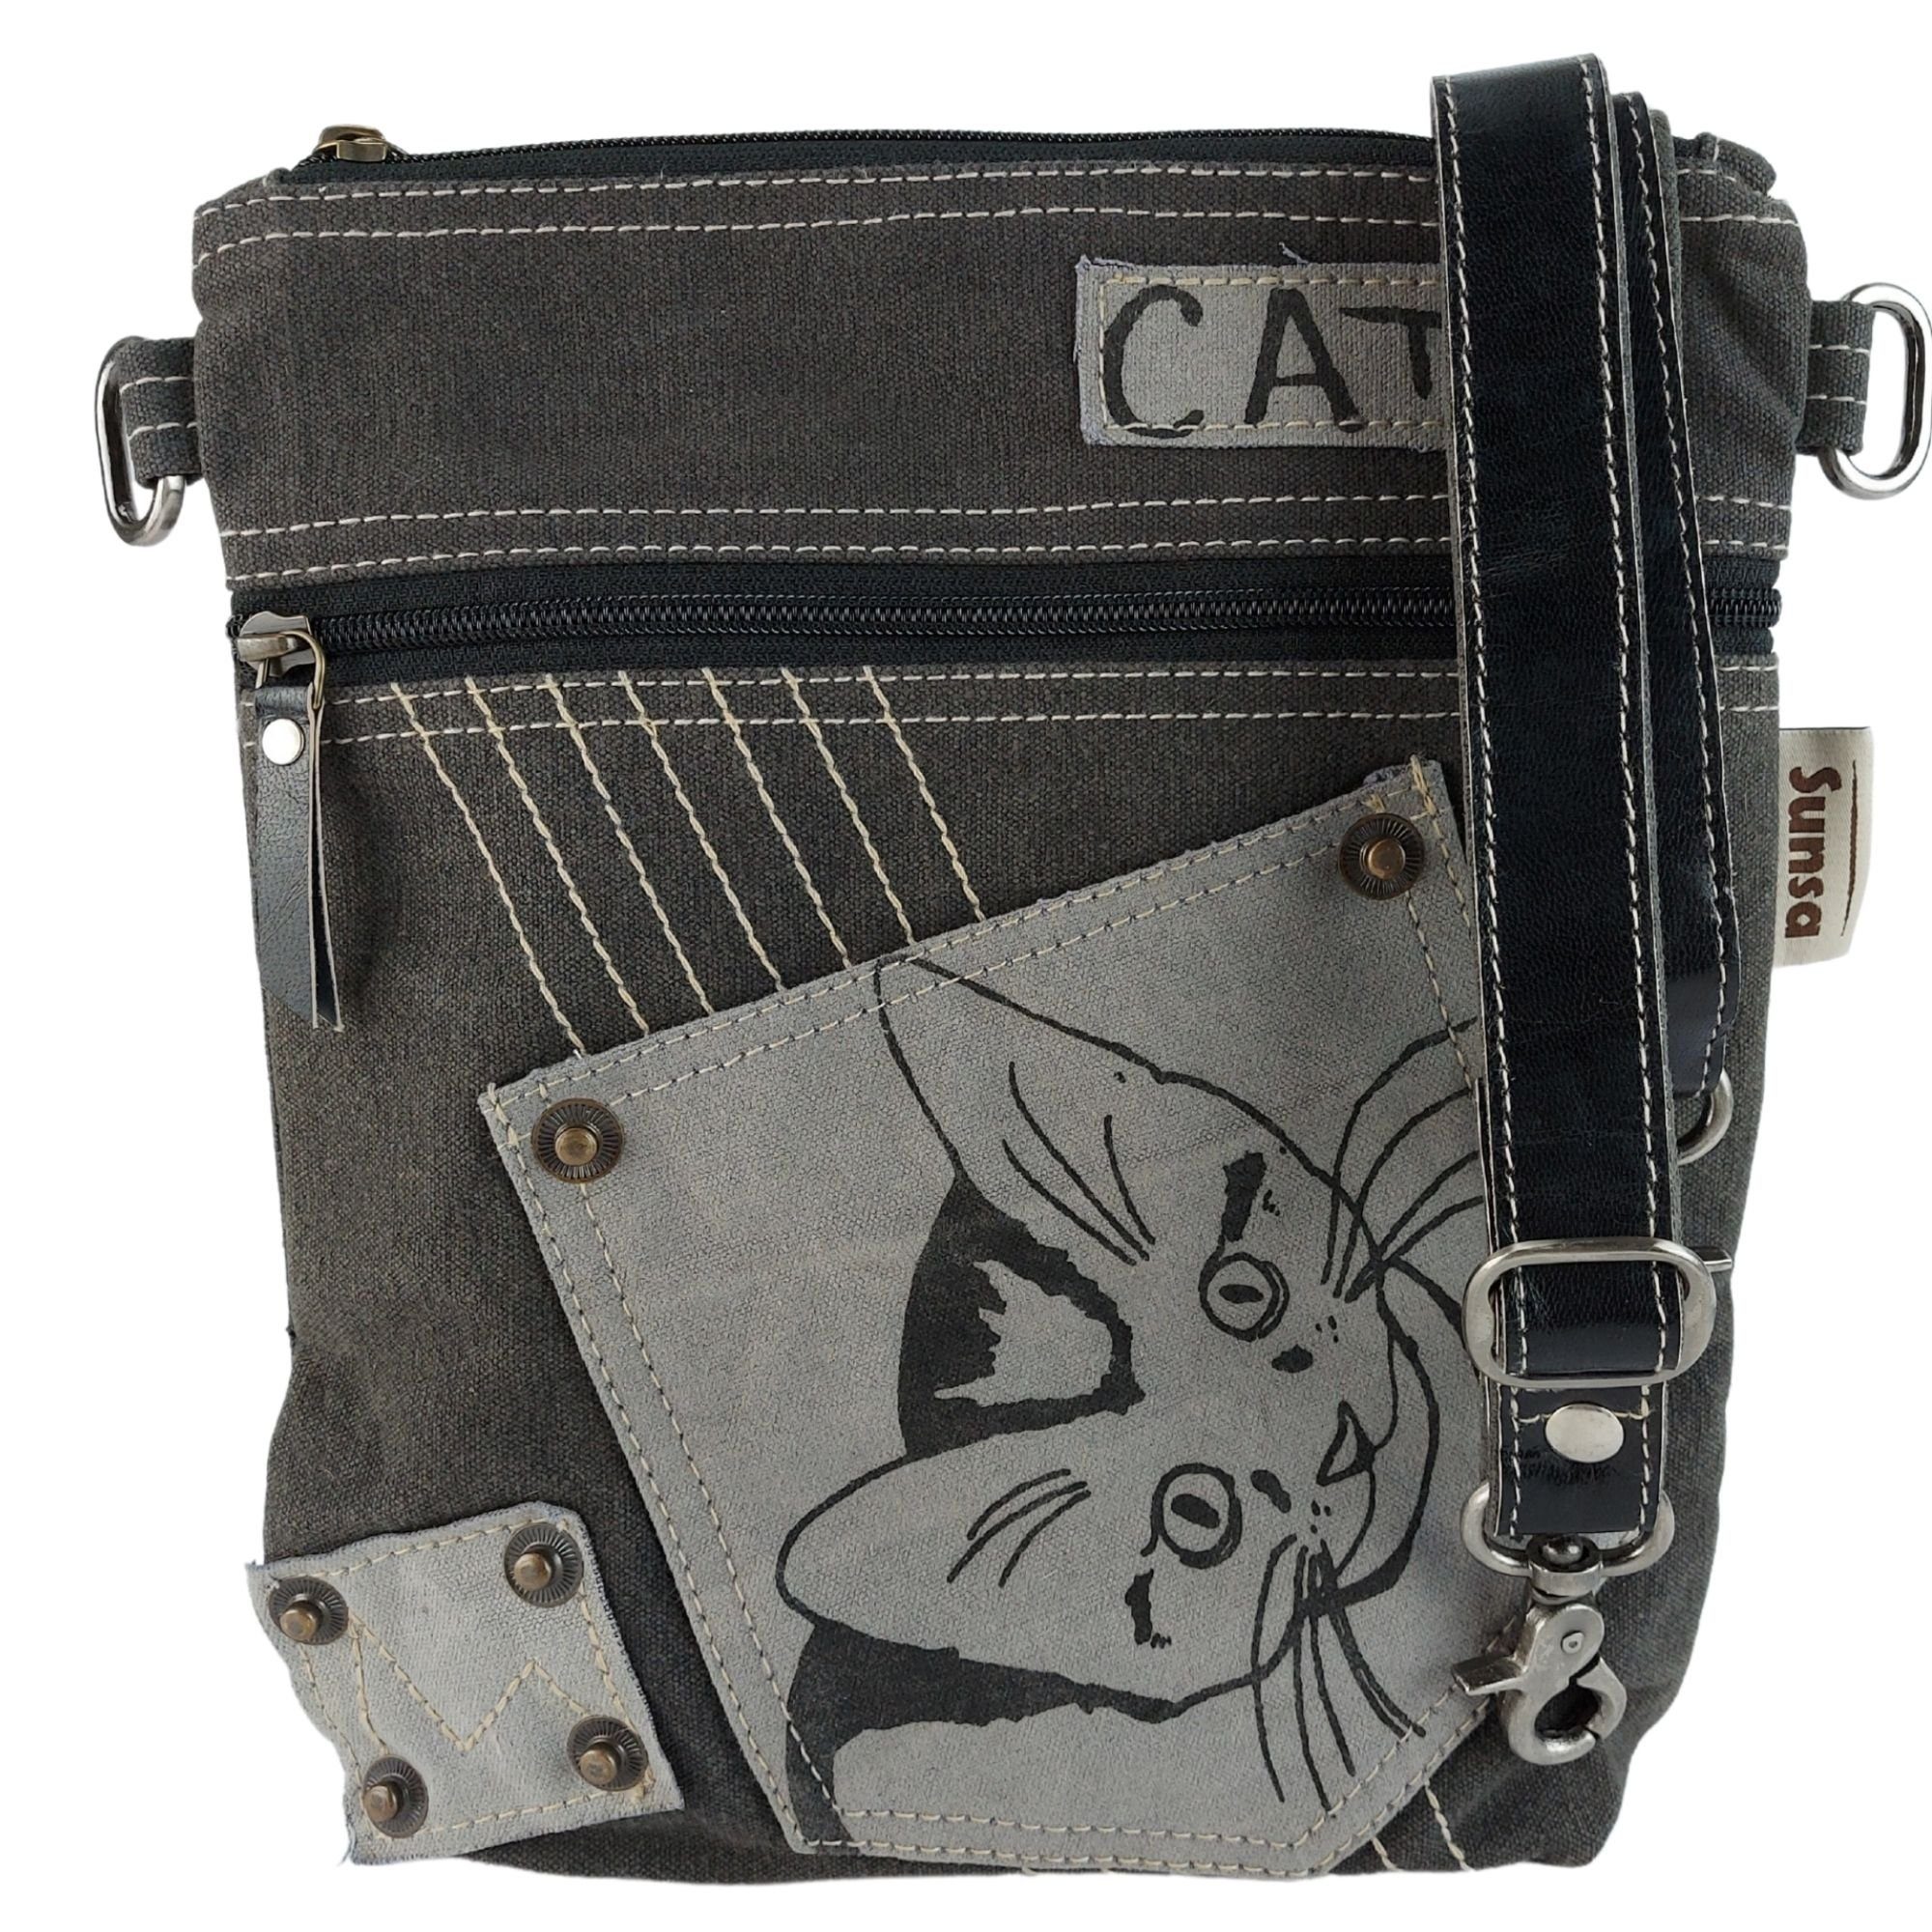 Sunsa Umhängetasche Umhängetasche aus Canvas, Crossbody Tasche mit Katzen Motiv